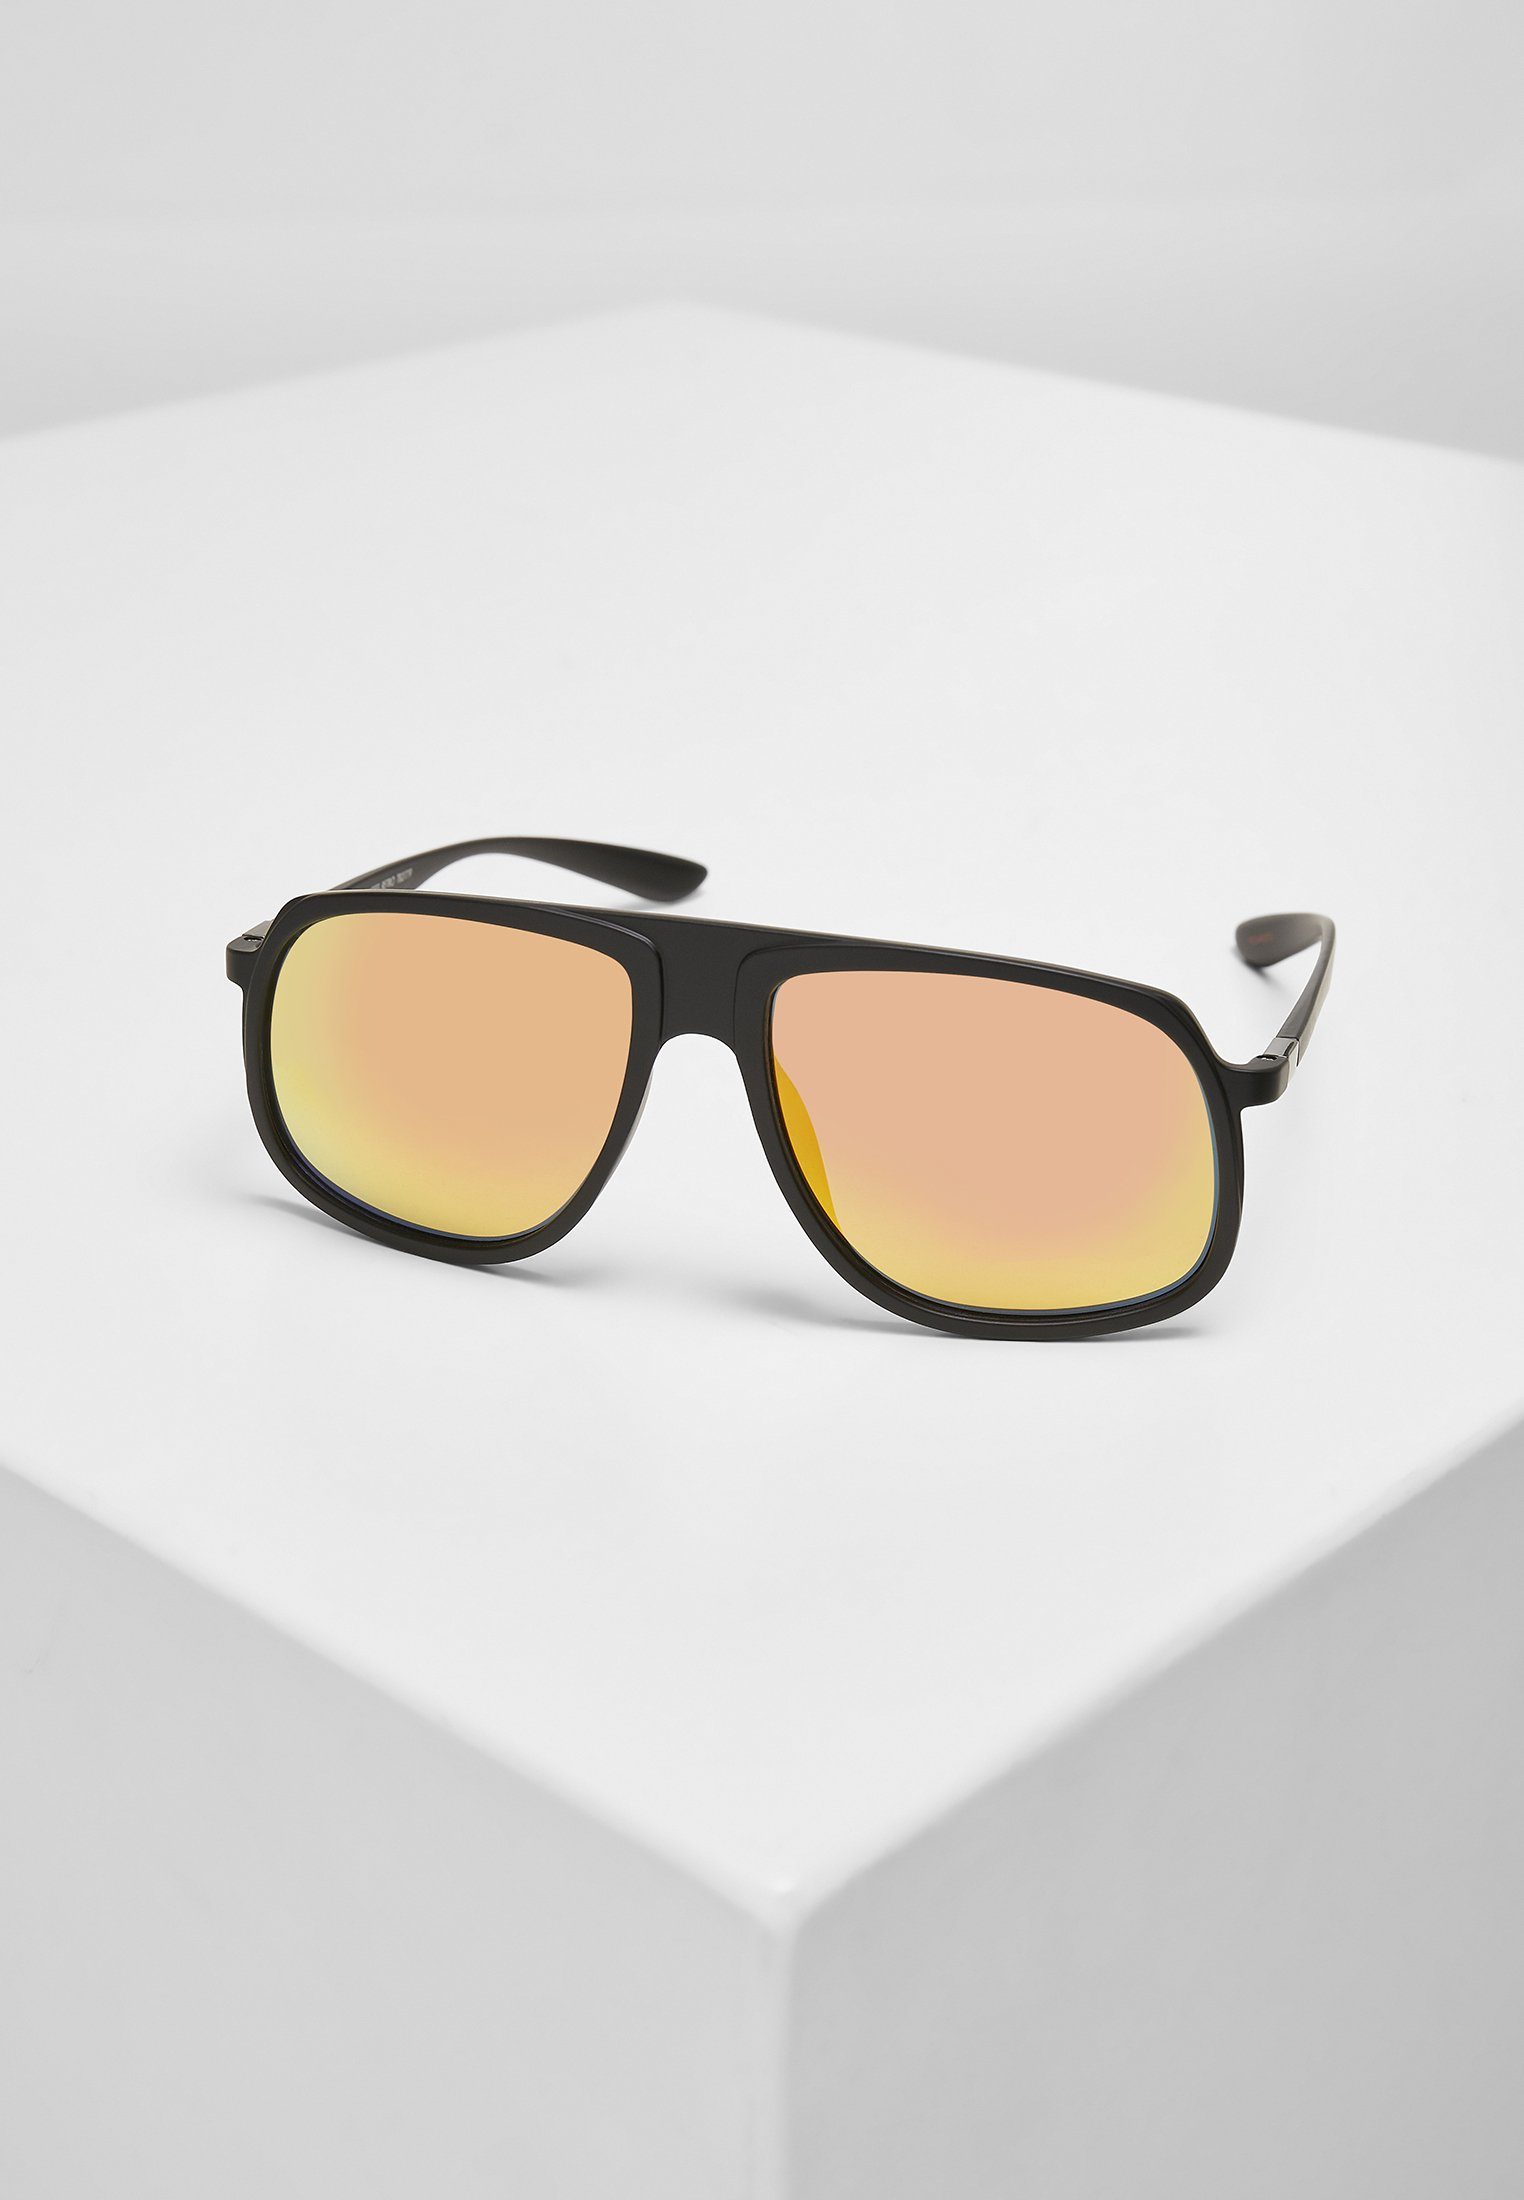 URBAN CLASSICS Sonnenbrille Accessoires 107 Chain Sunglasses Retro | Sonnenbrillen